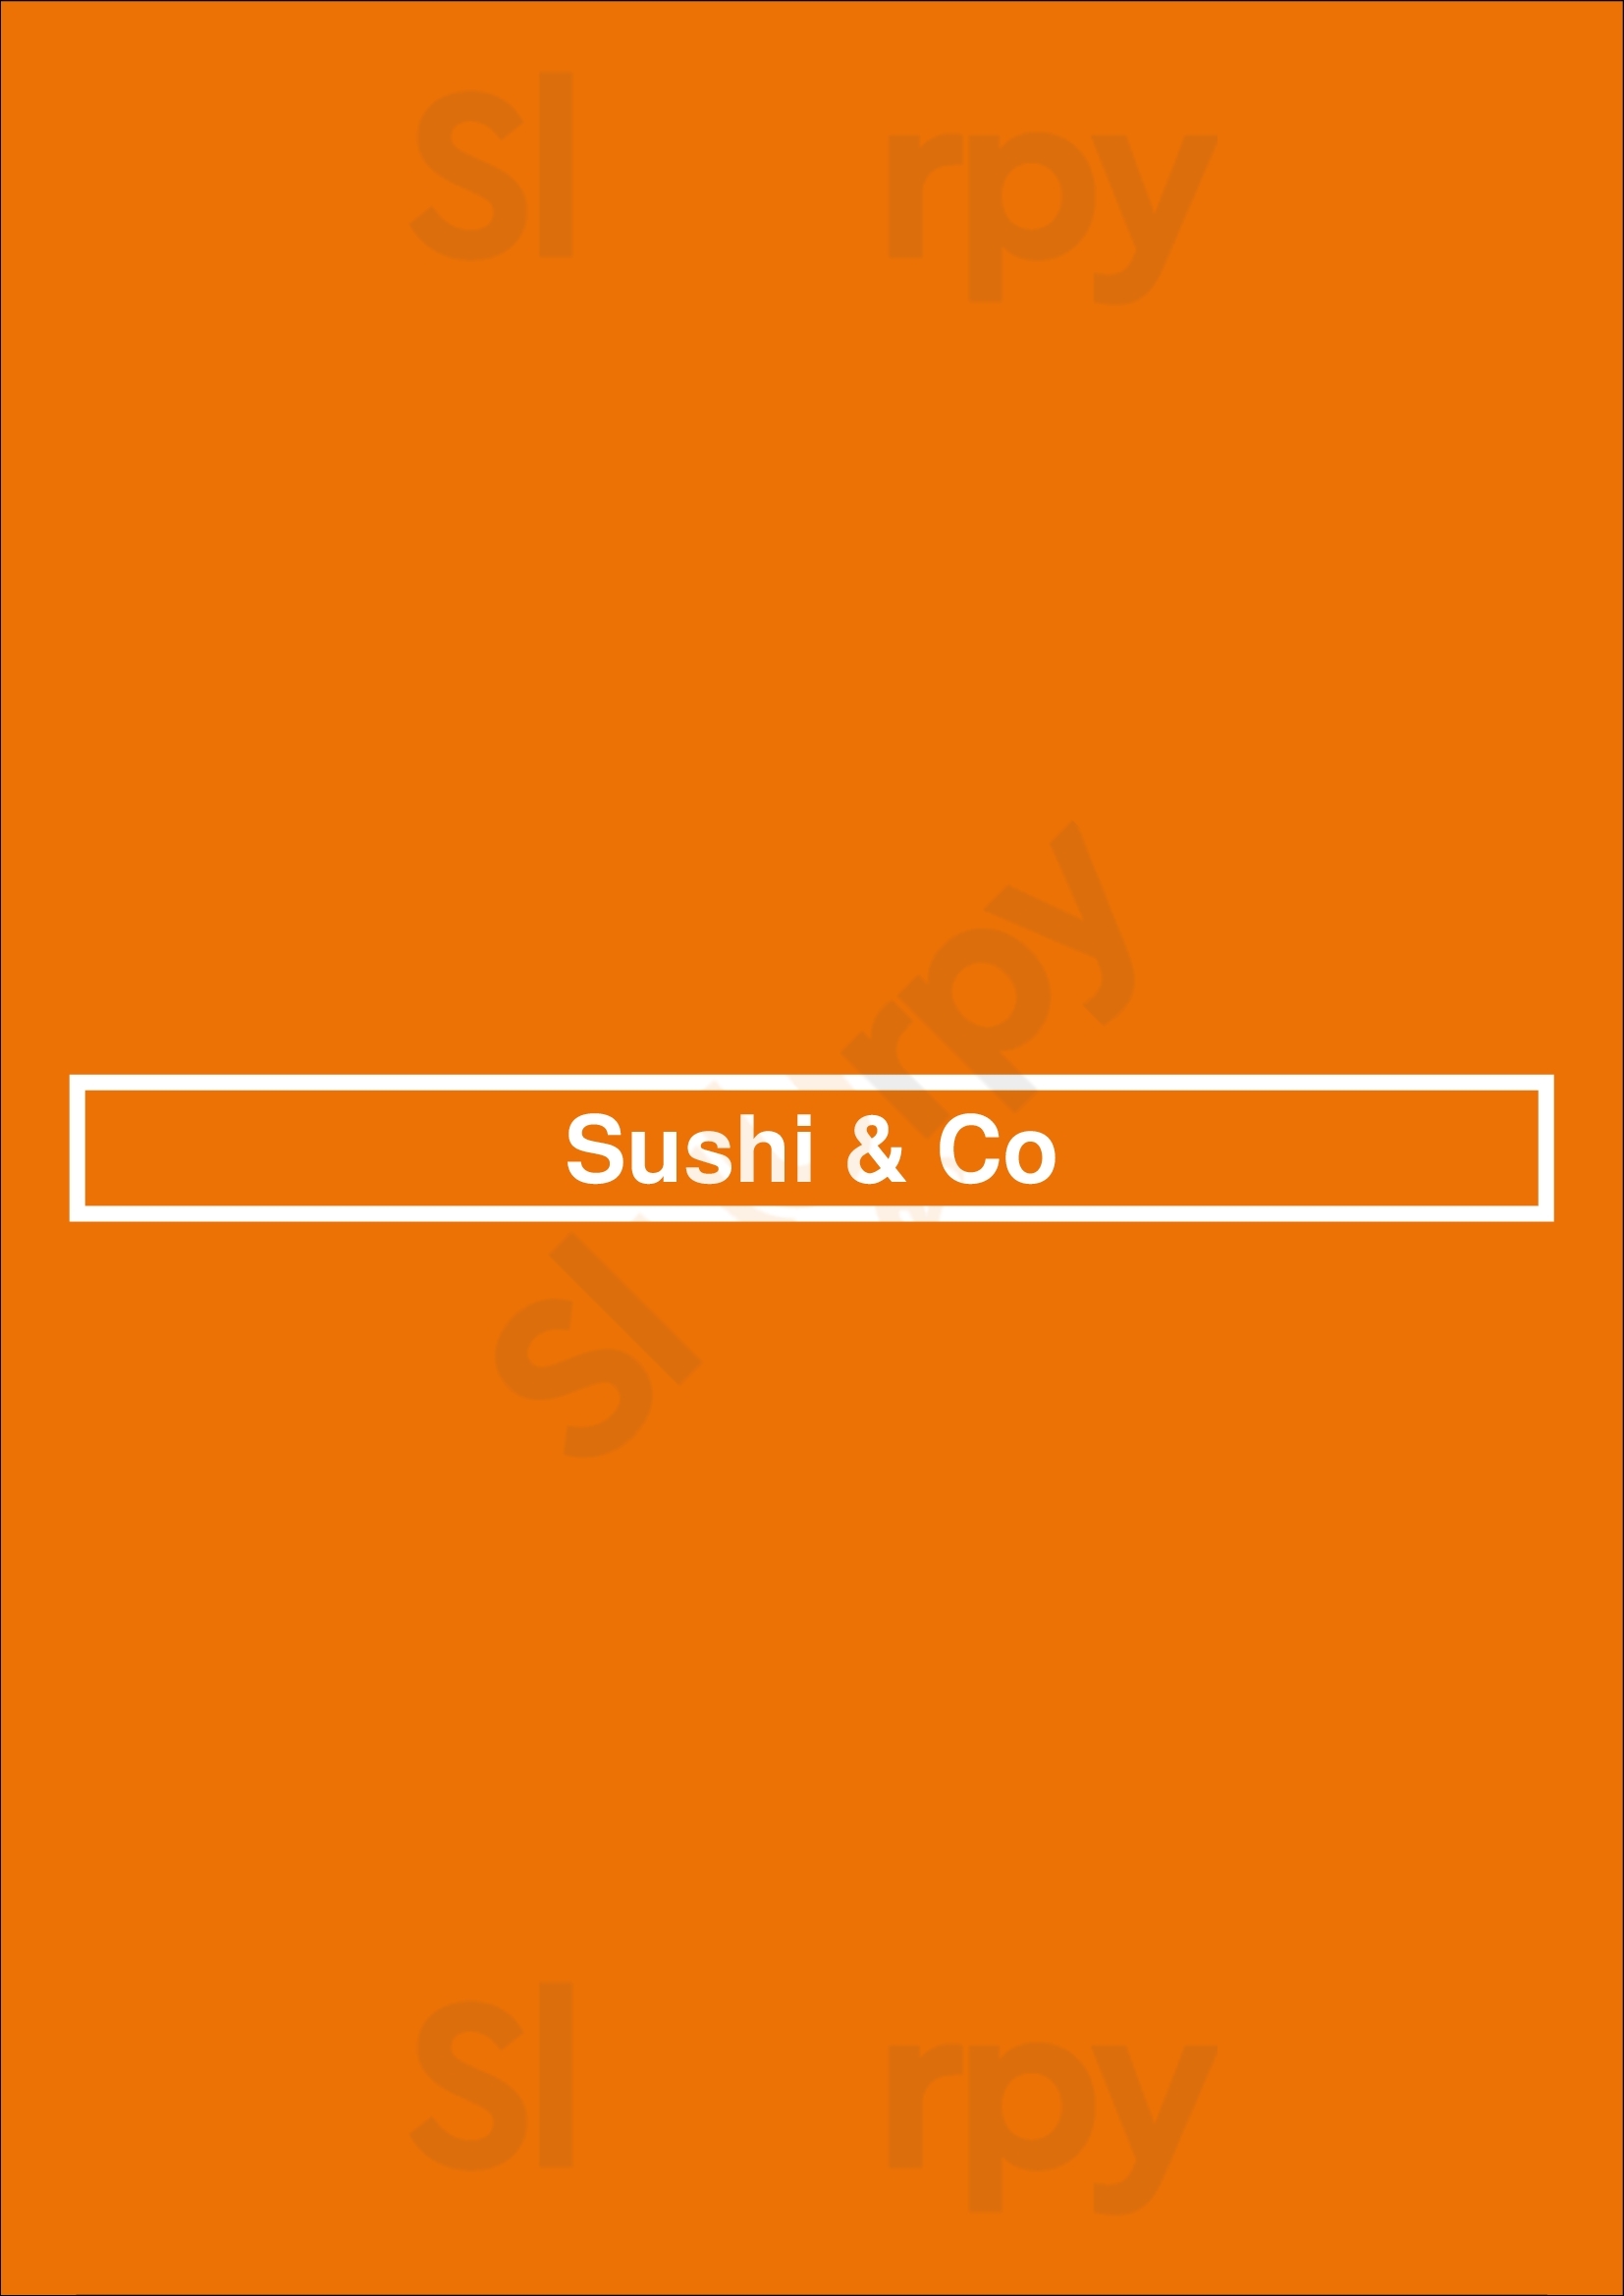 Sushi & Co Calgary Menu - 1